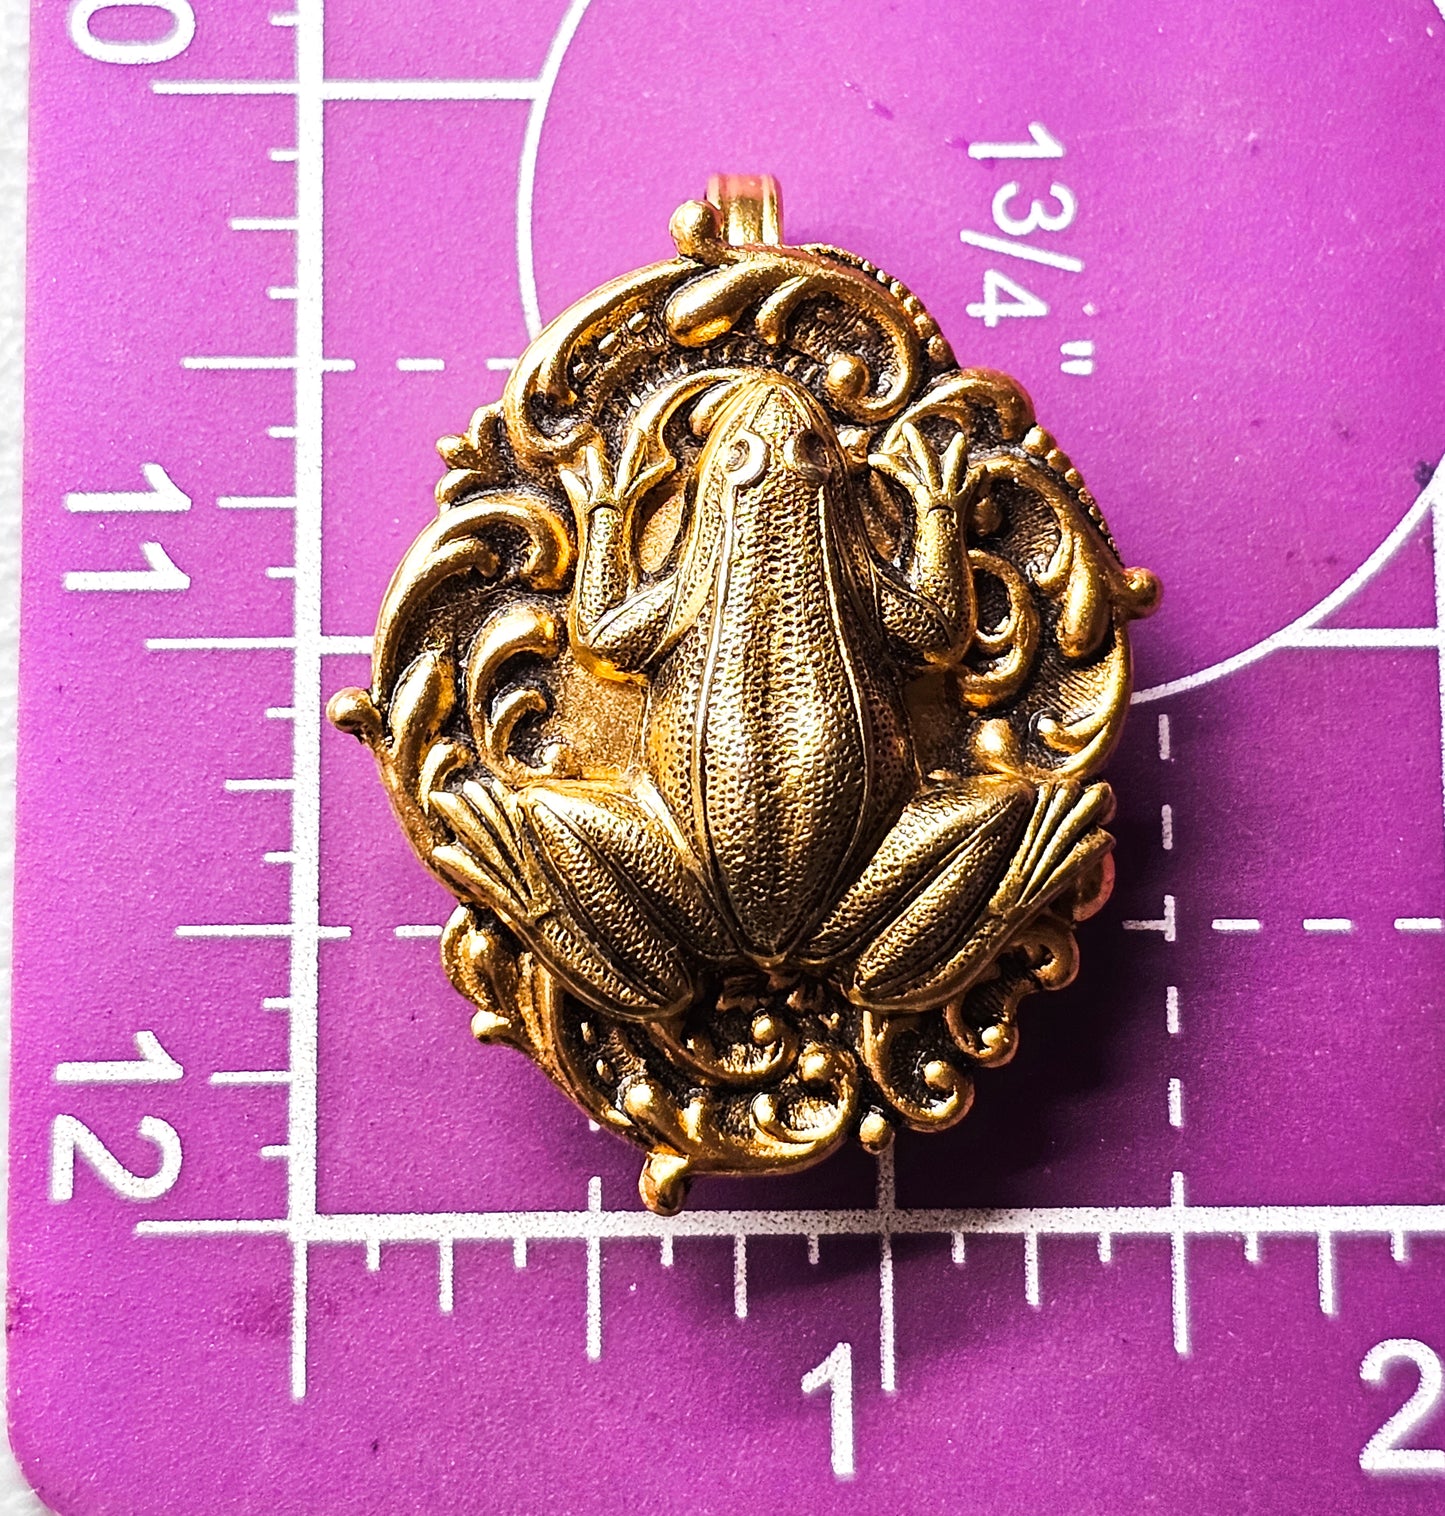 Golden frog vintage Art Nouveau style cartouche lily pad tie clip